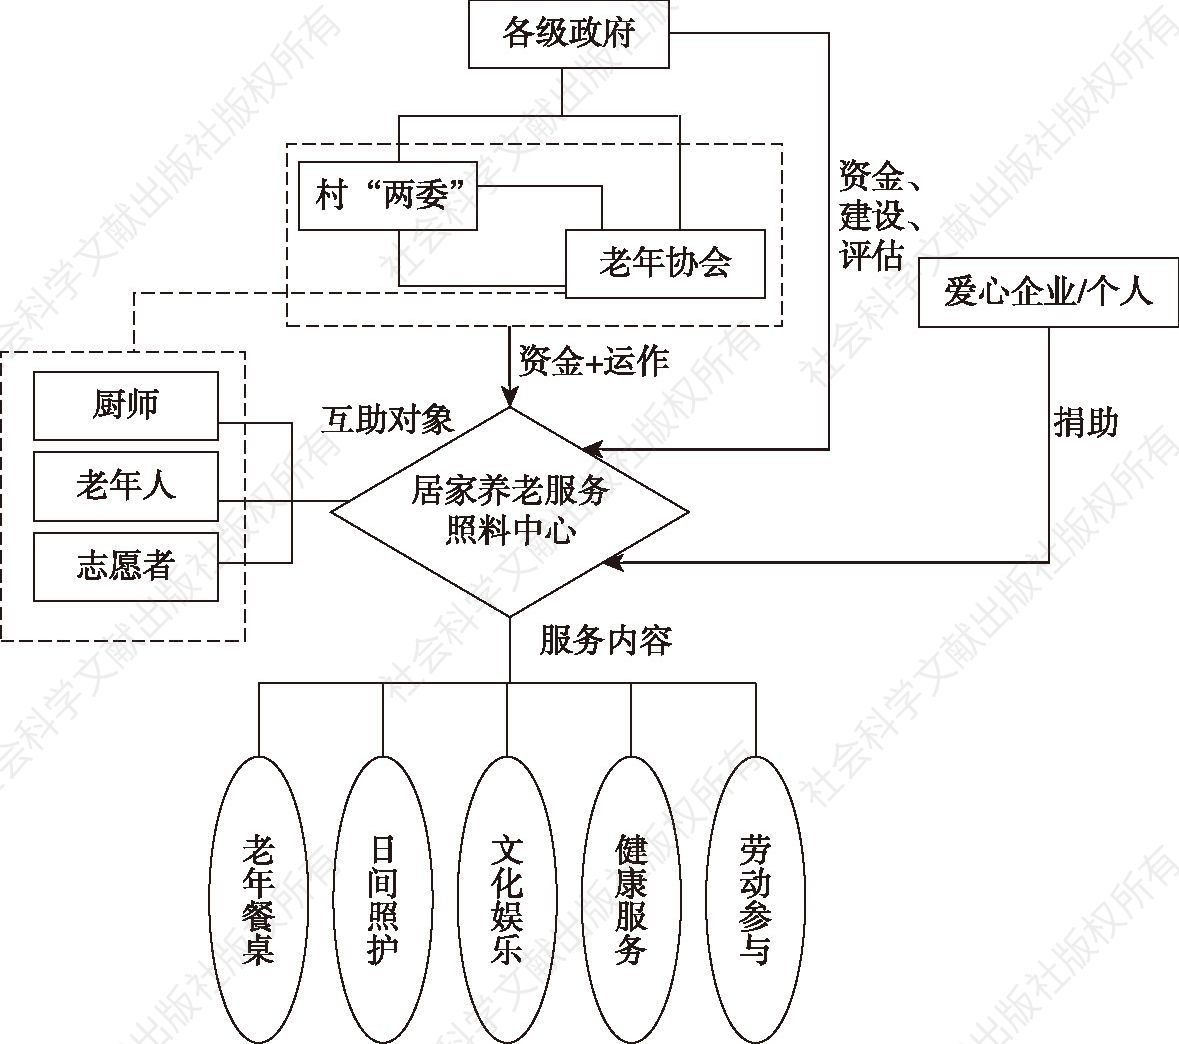 图6-3 金华农村社区居家养老服务系统示意